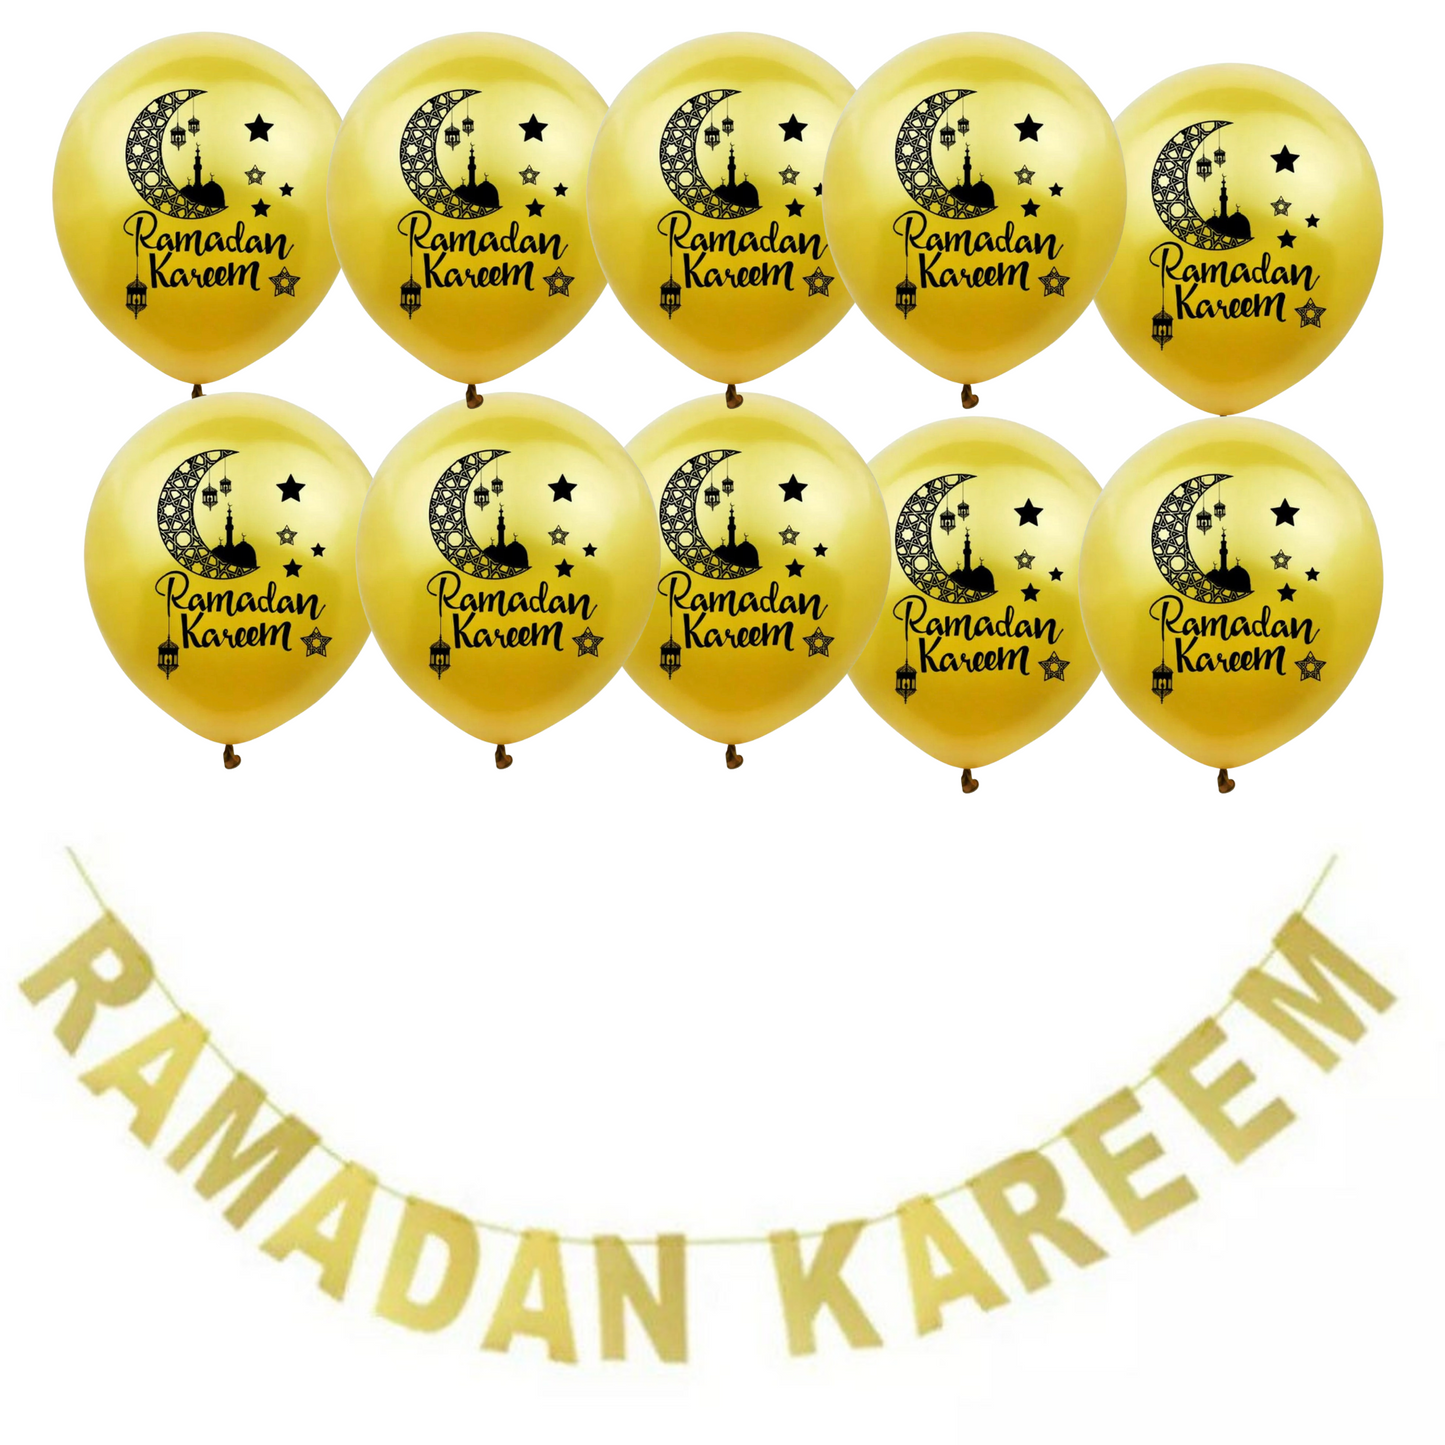 Ramadan Kareem Banner with 10 Ramadan Kareem Balloons, Perfect Ramadan Party and house decoration